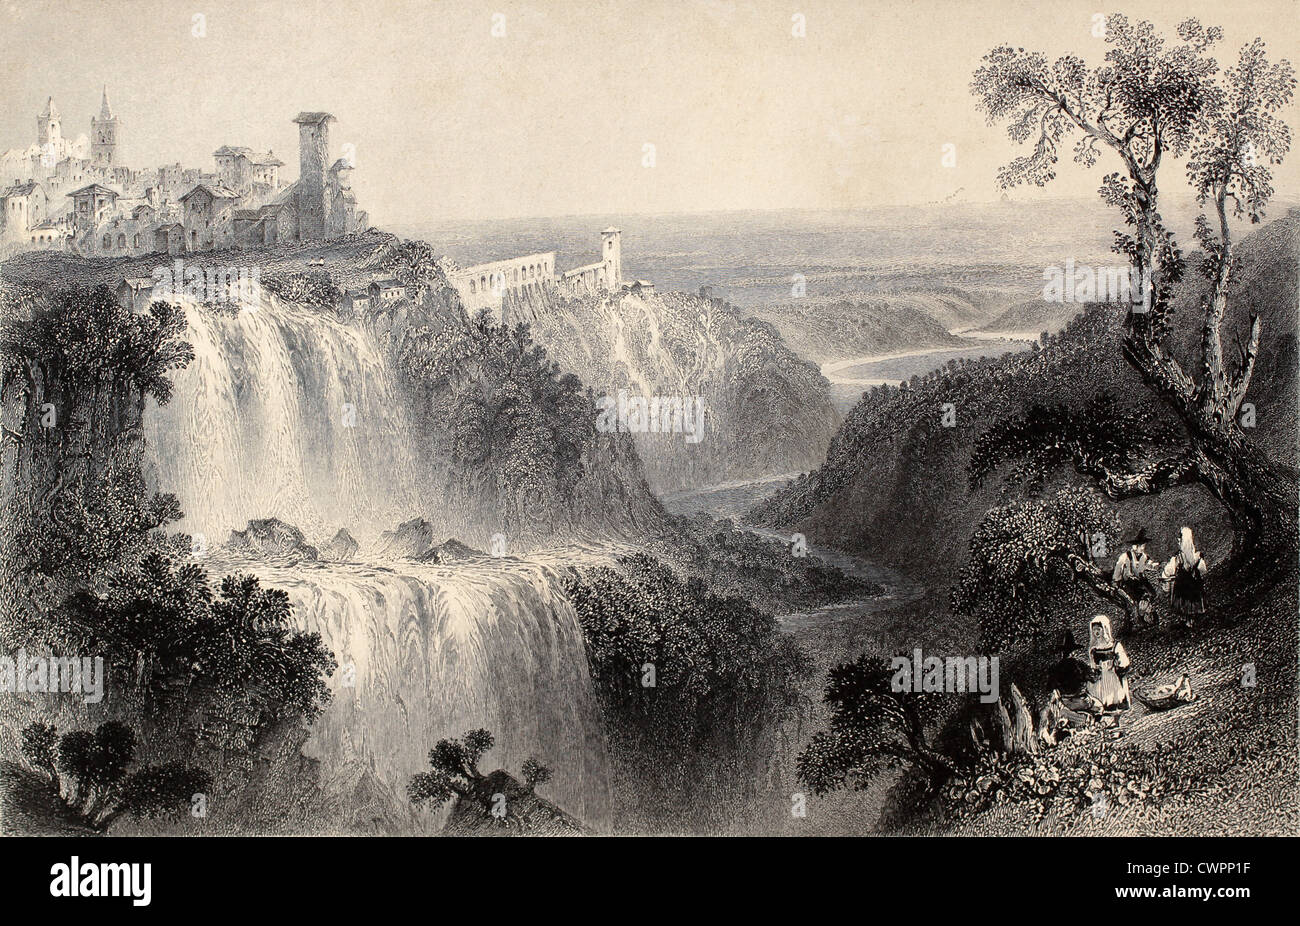 Tivoli waterfalls, near Rome, Italy Stock Photo